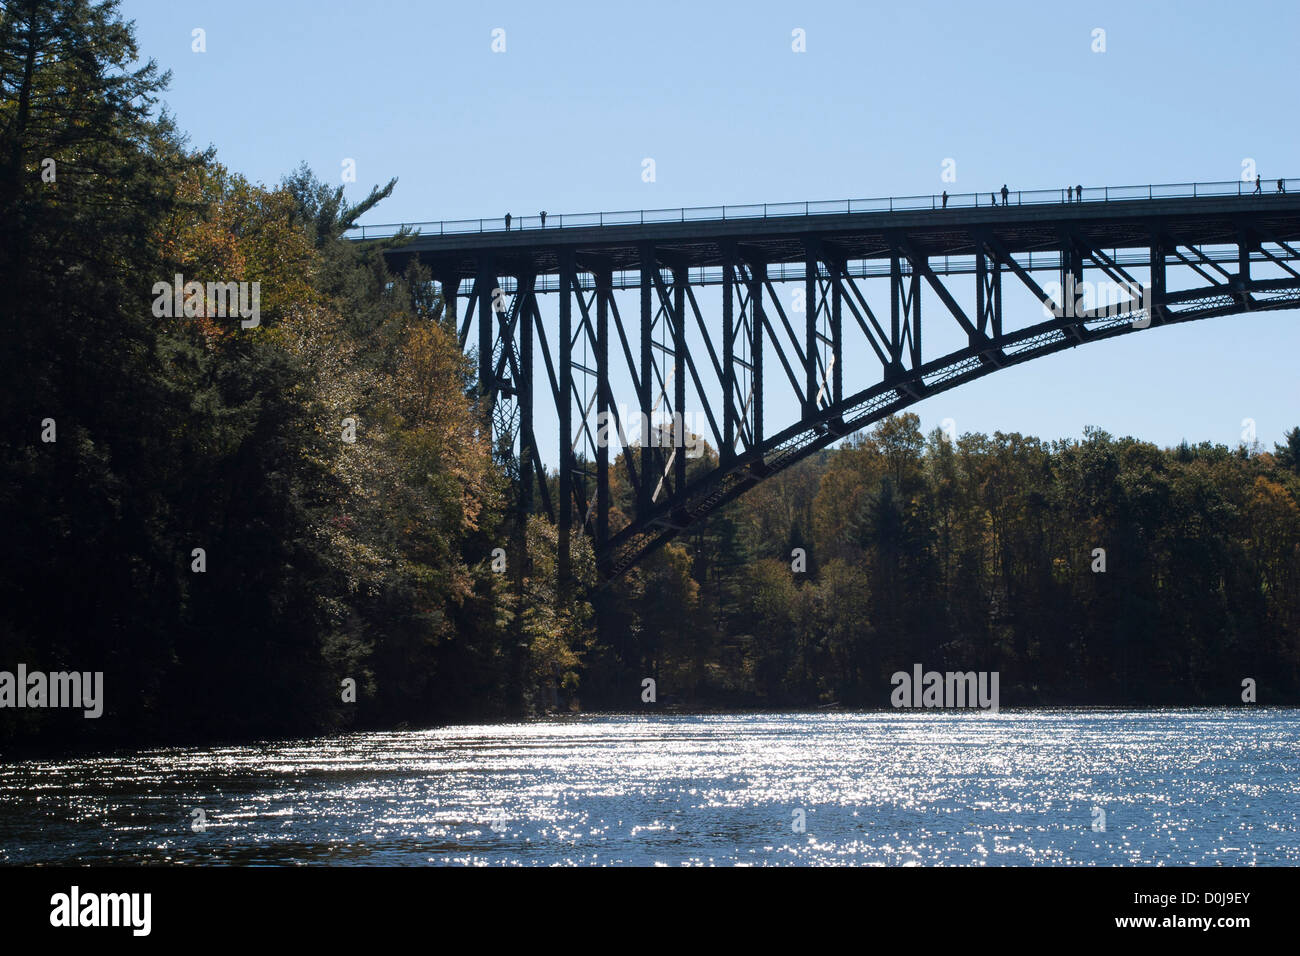 Französischen Königs Brücke, eine große Stahlrahmen Bogenbrücke Baujahr 1931/32, überspannt den Connecticut River in Northfield Massachusetts. Stockfoto